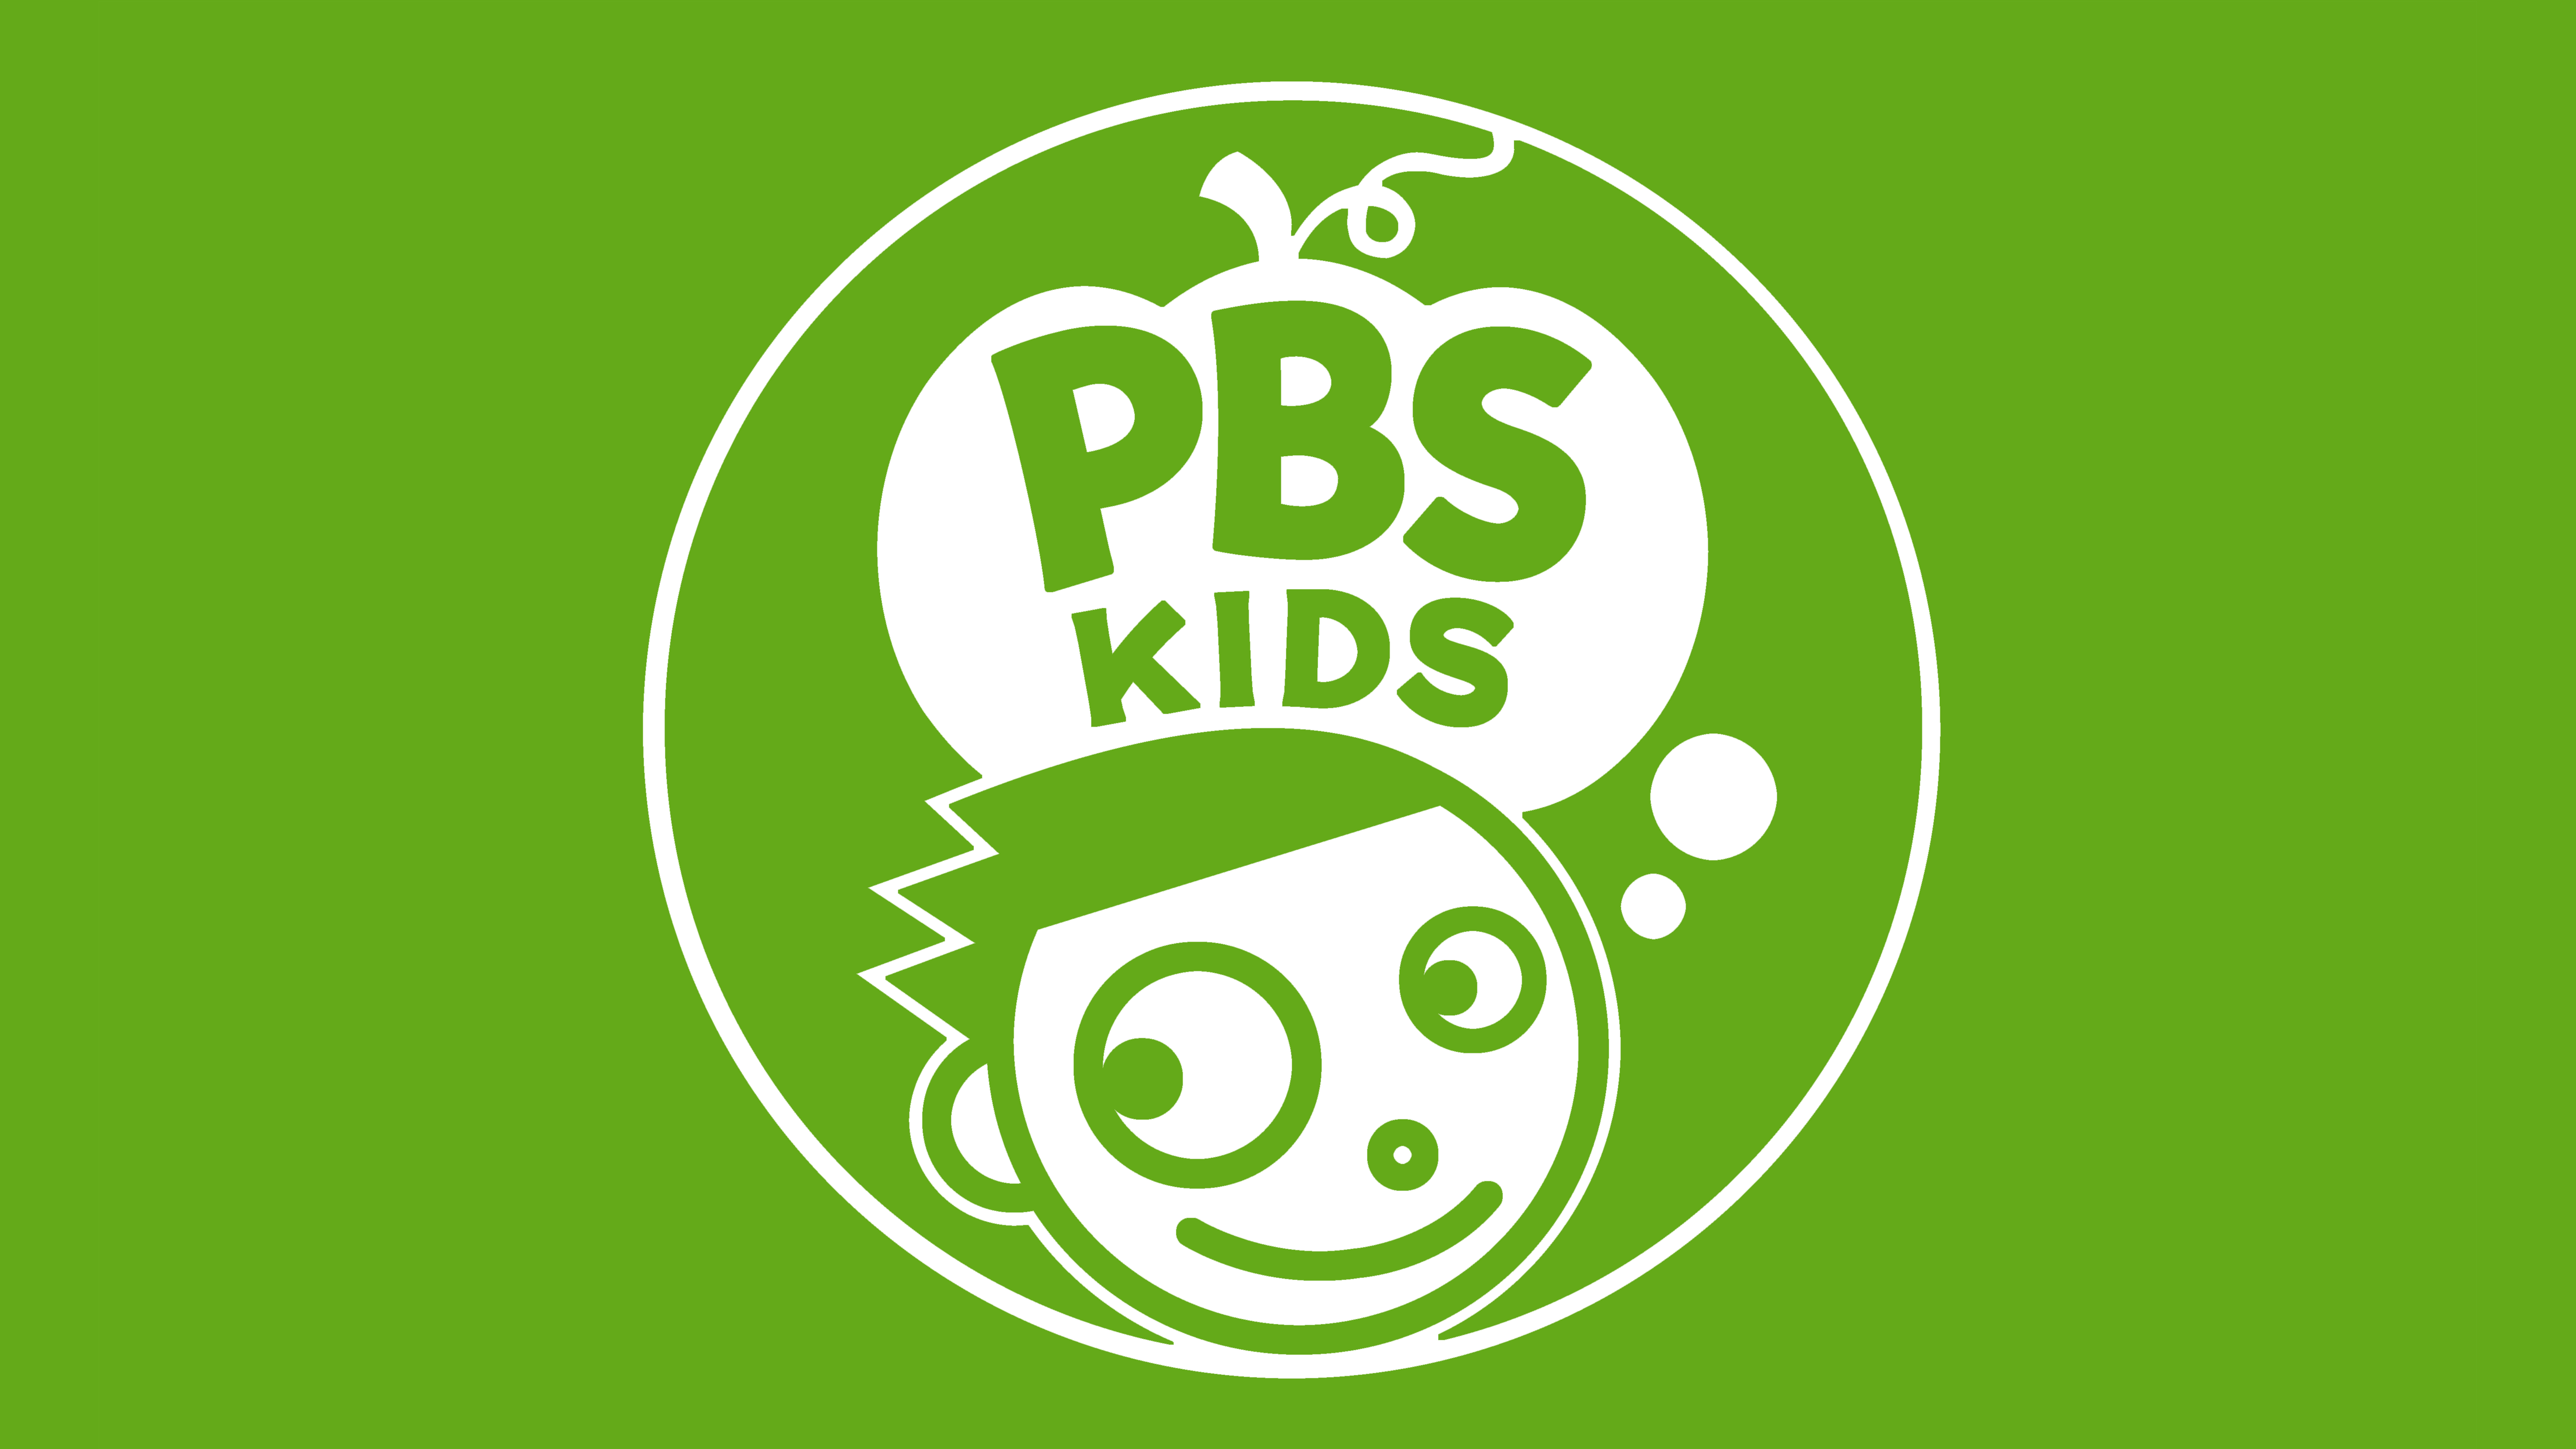 PBS Kids logo shaped like a pumpkin.